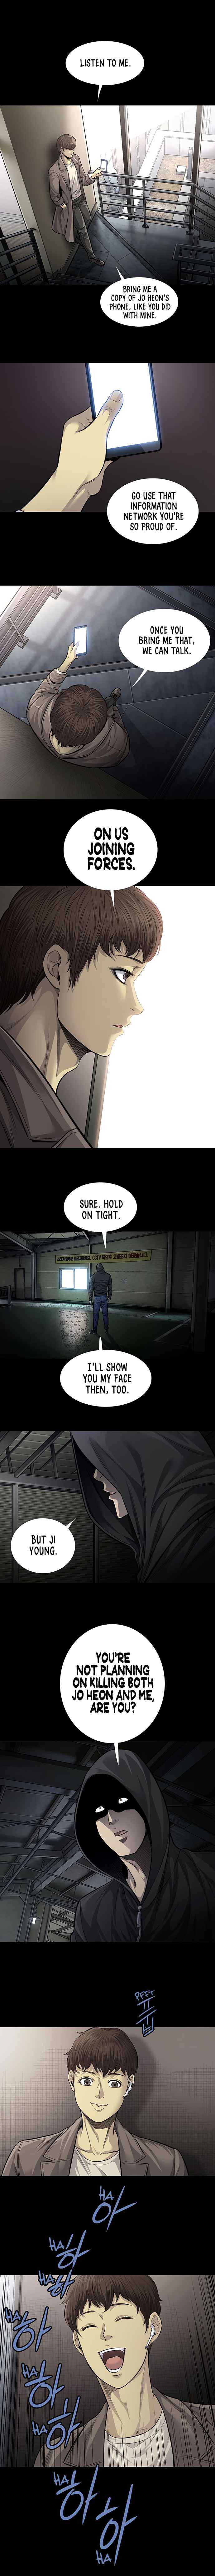 Justice (Vigilante) - Page 3